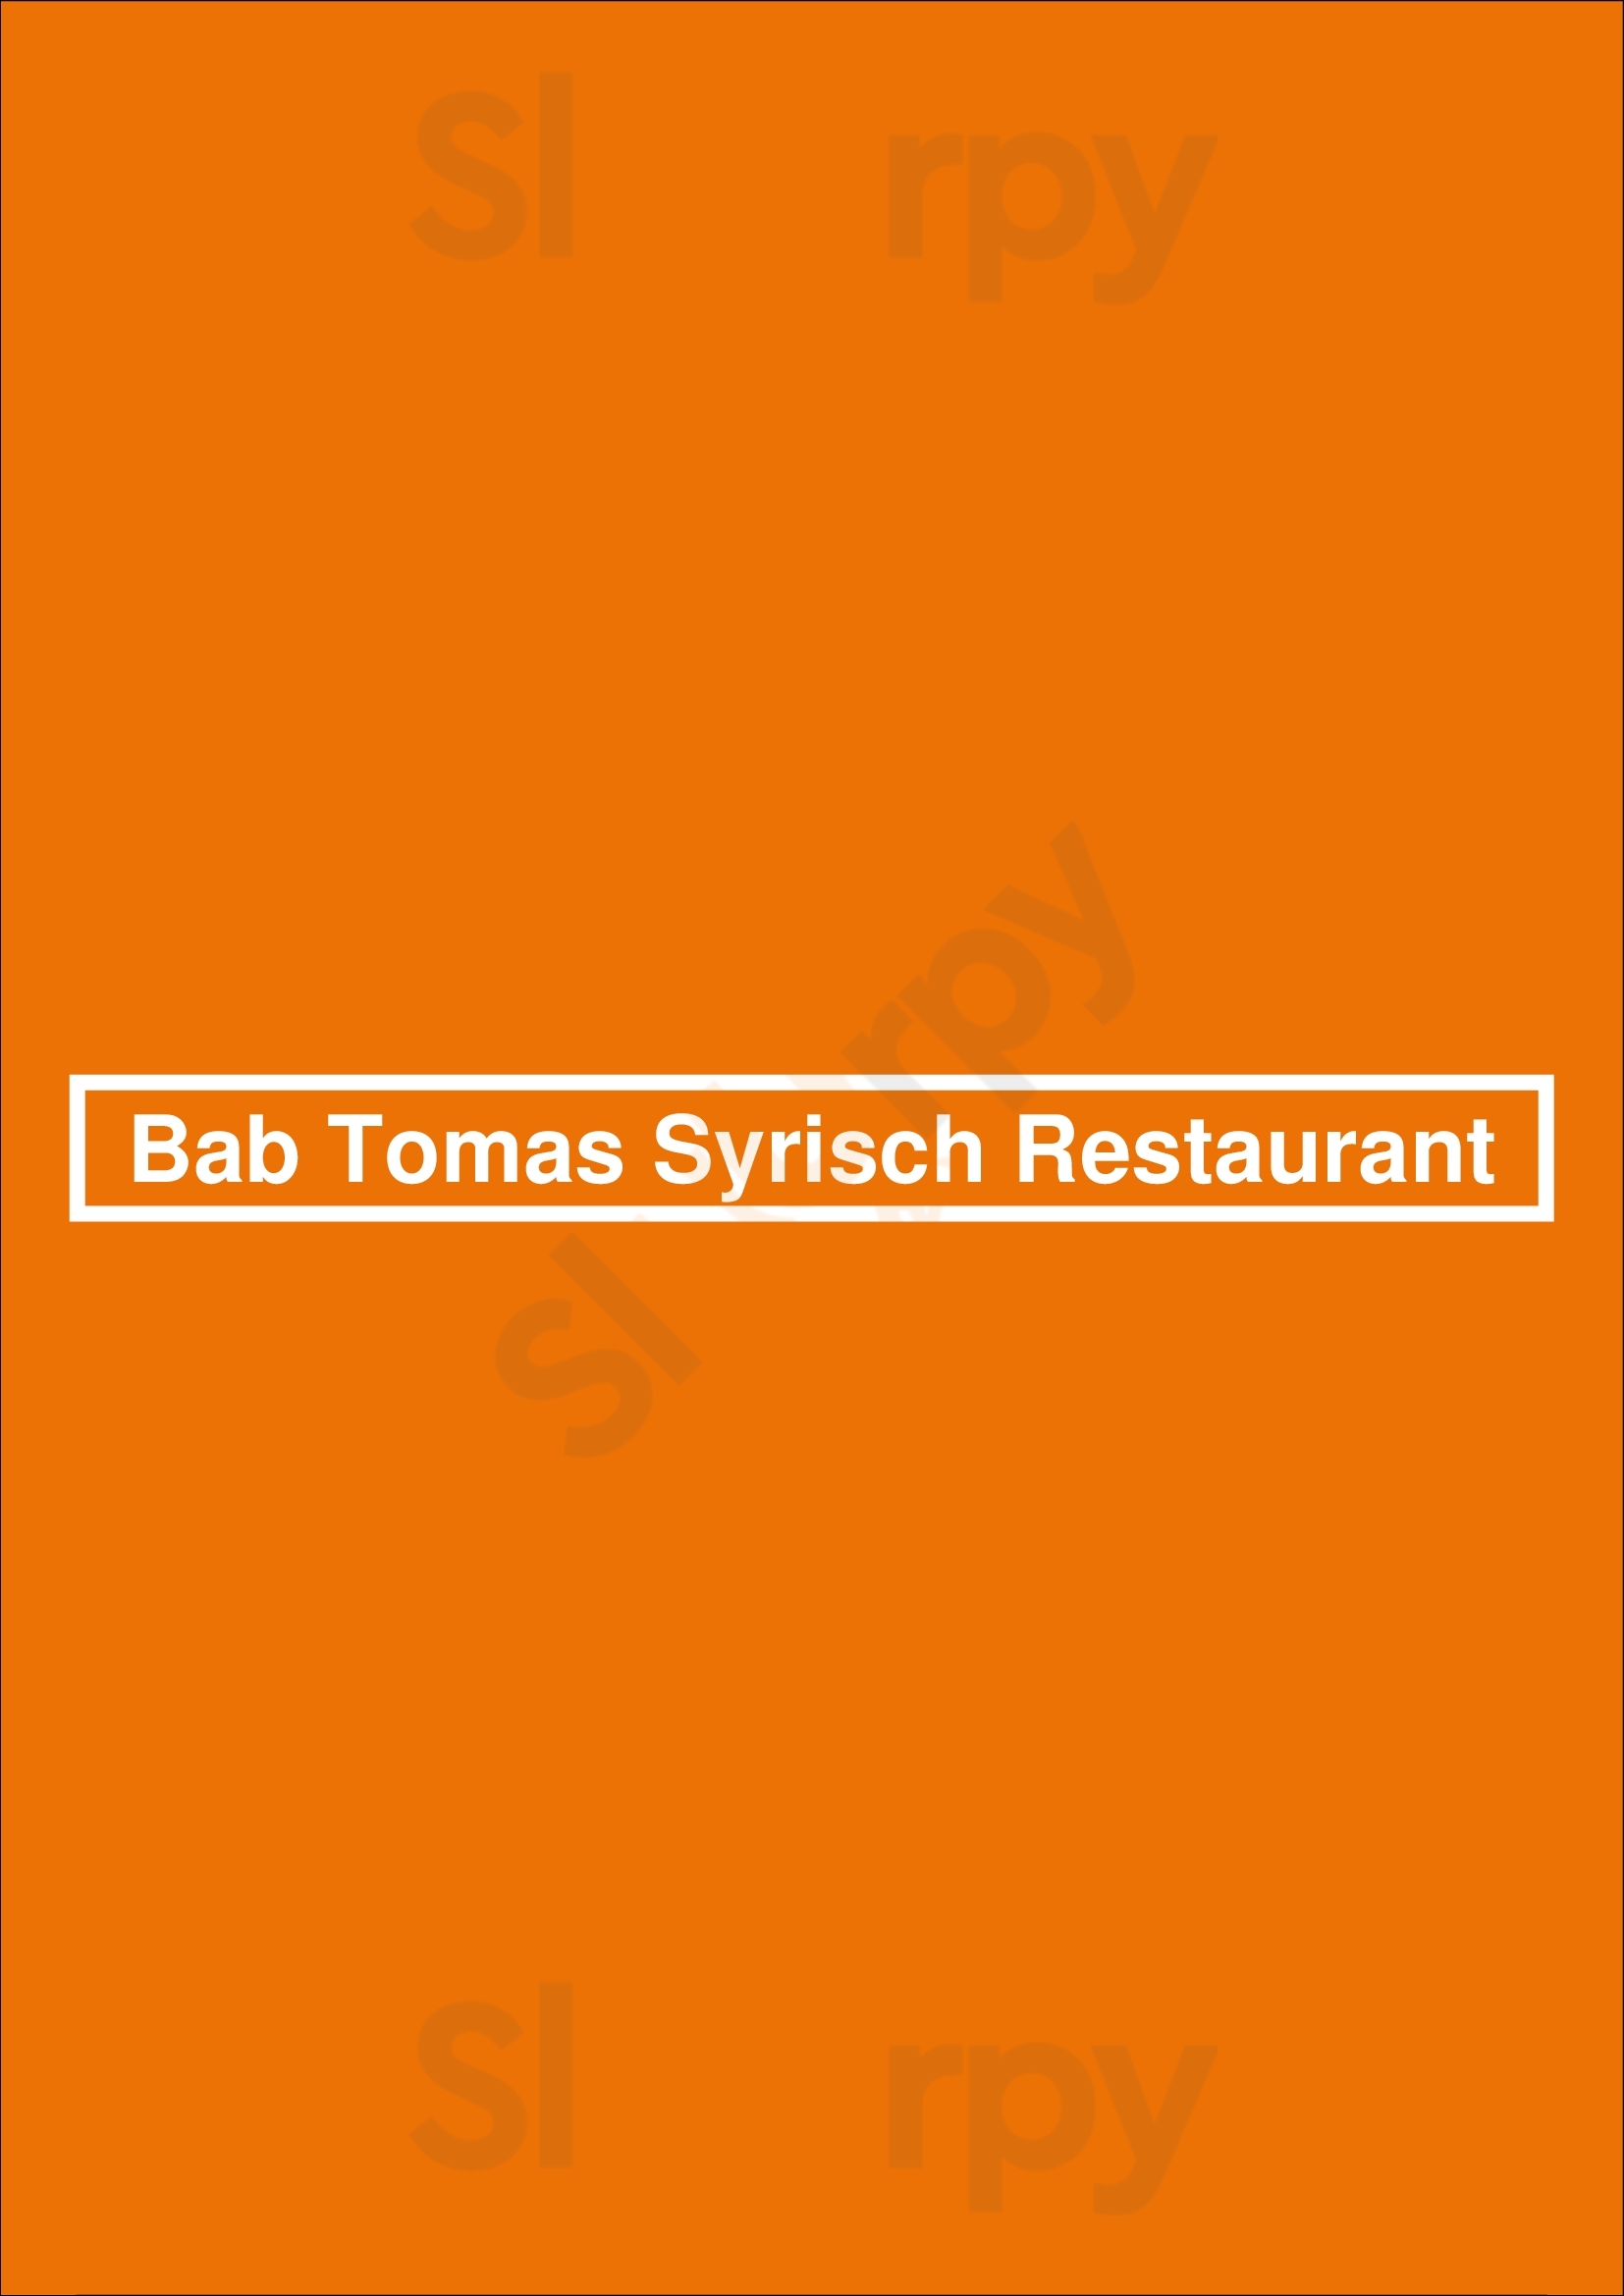 Bab Tomas Syrisch Restaurant Maastricht Menu - 1